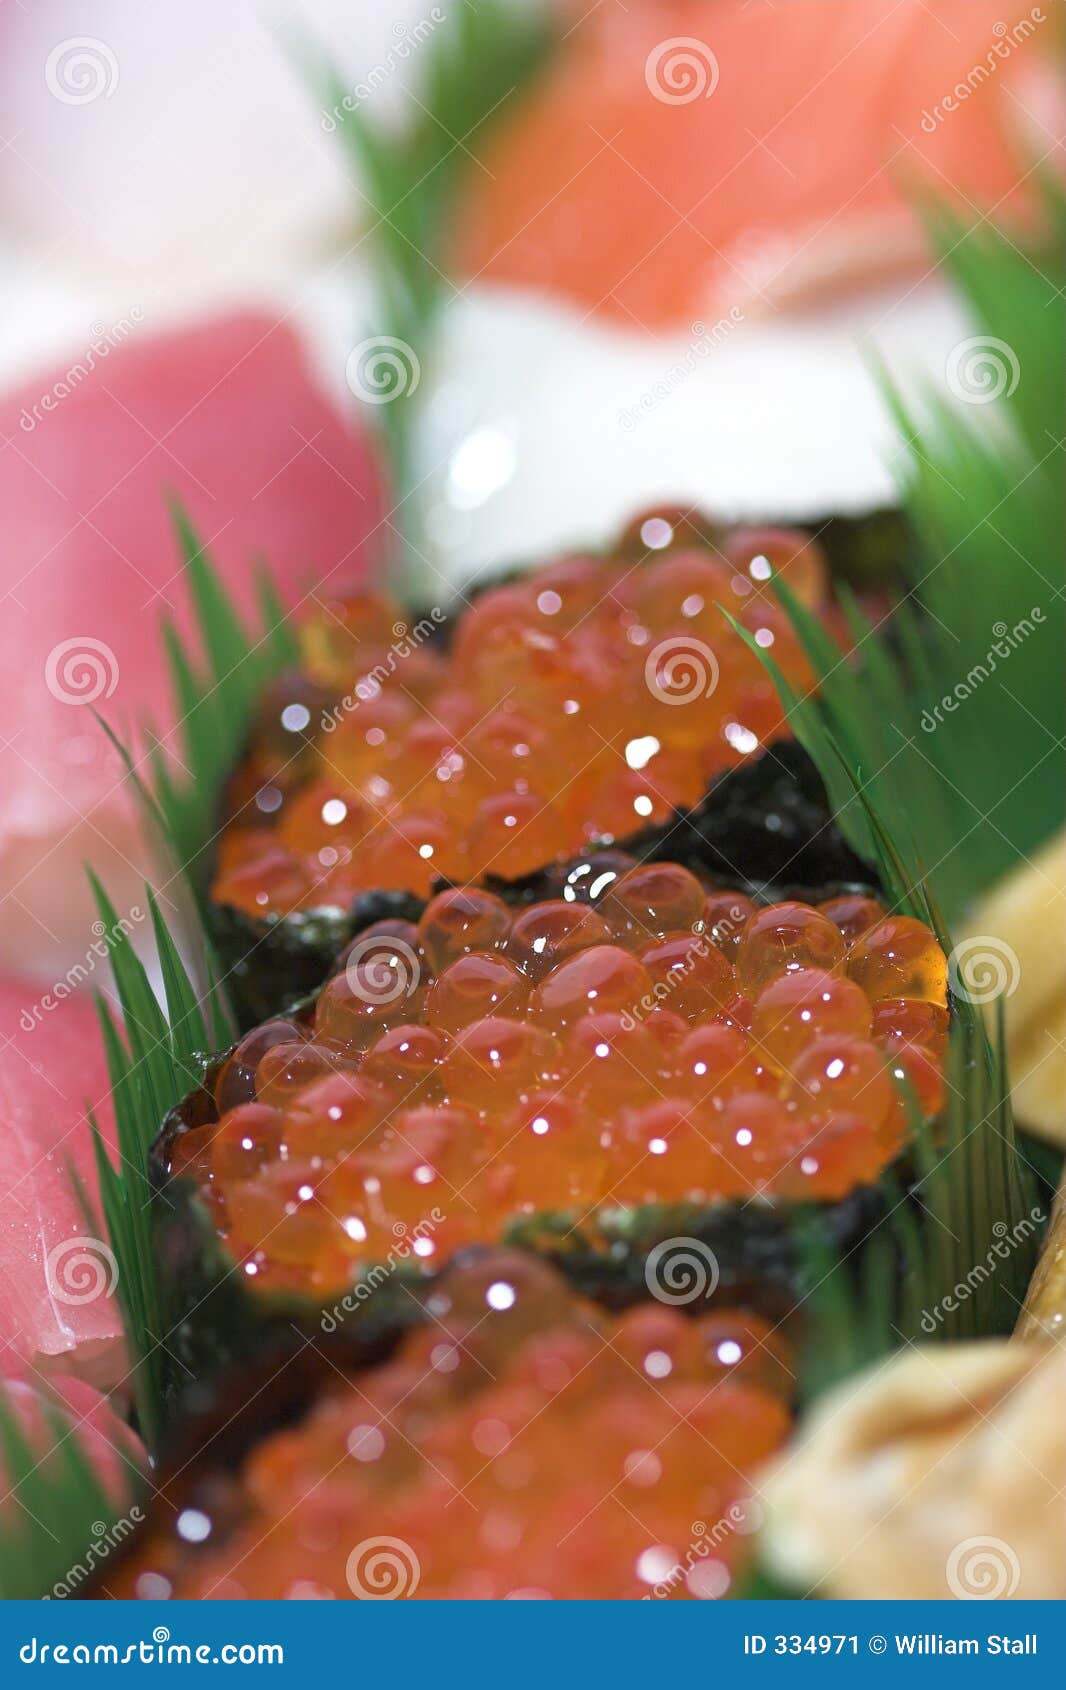 ikura sushi seaweed fish eggs food meal appetizer ethnic Asian